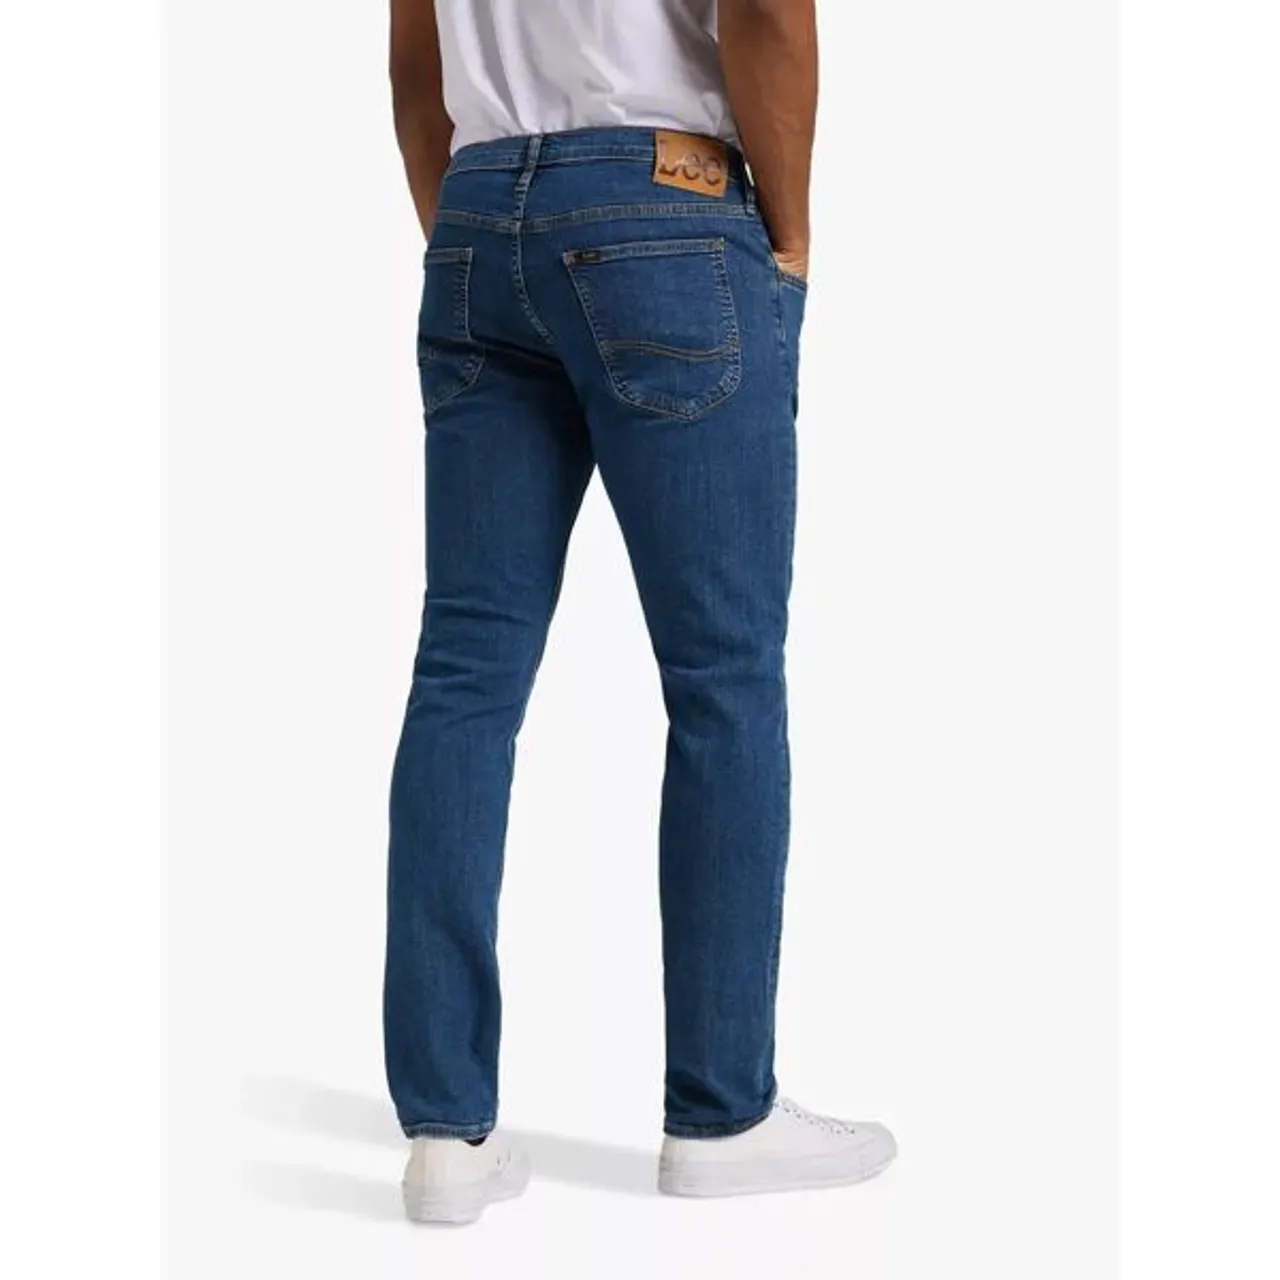 Lee Luke Stone Wash Slim Fit Jeans, Blue - Blue - Male